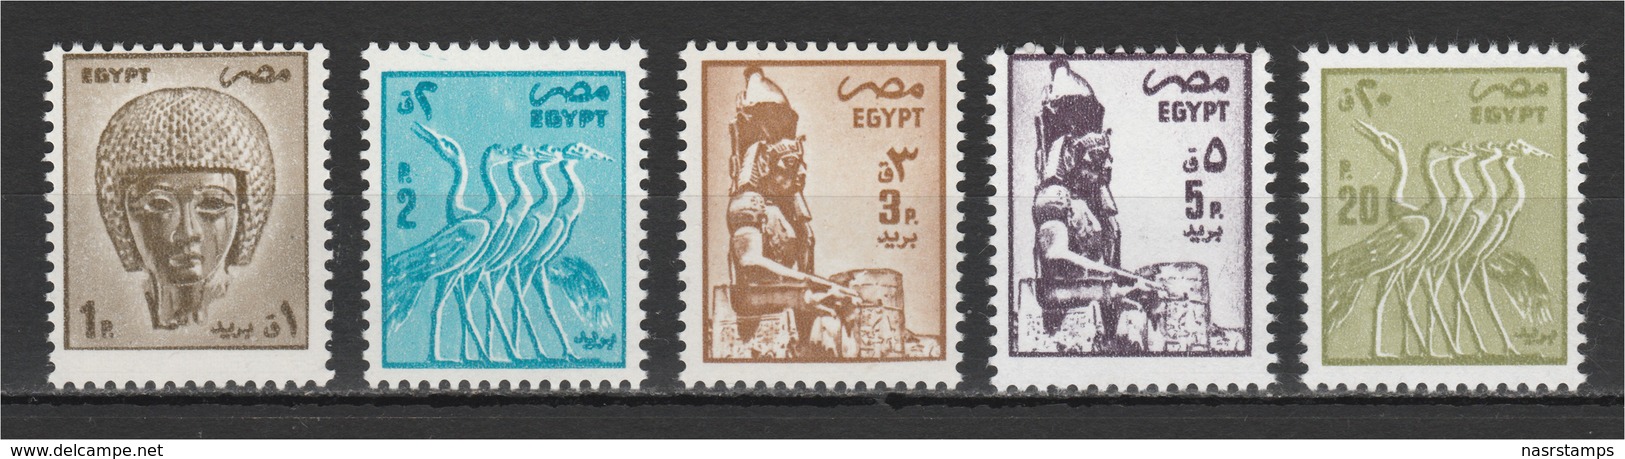 Egypt - 1985 - ( Definitive Issue ) - Pharaonic - Short Set - MNH (**) - Egyptology